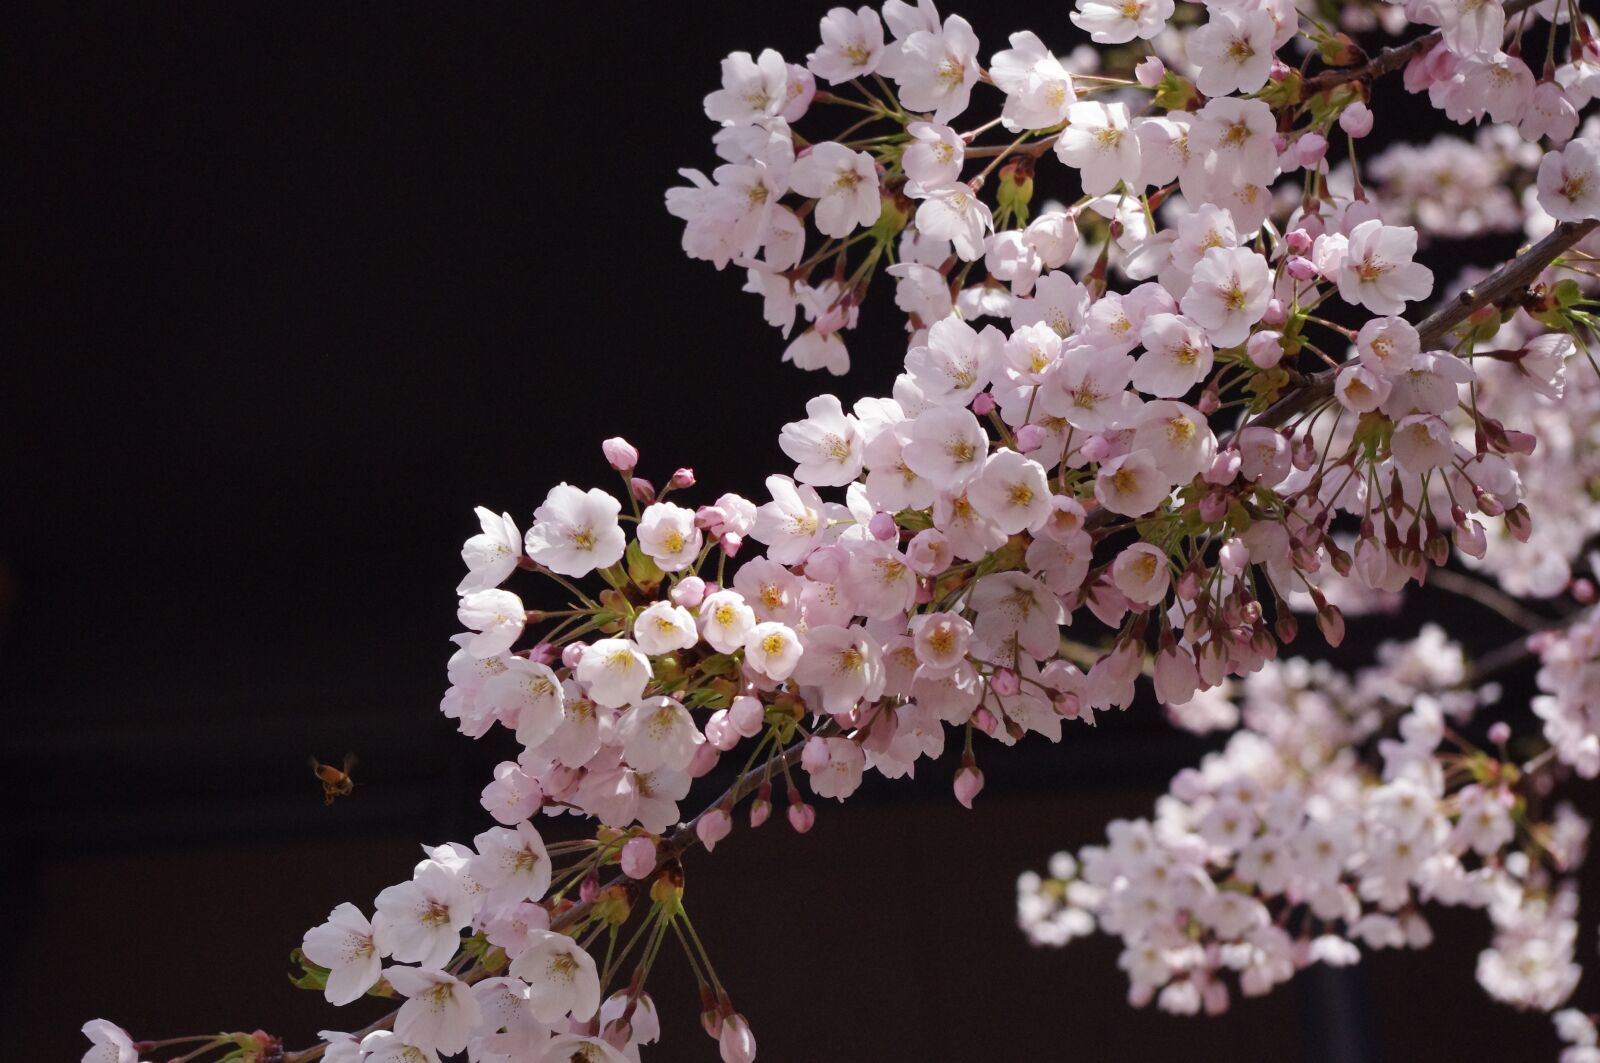 Pentax K-r sample photo. Sakura, flower, spring photography